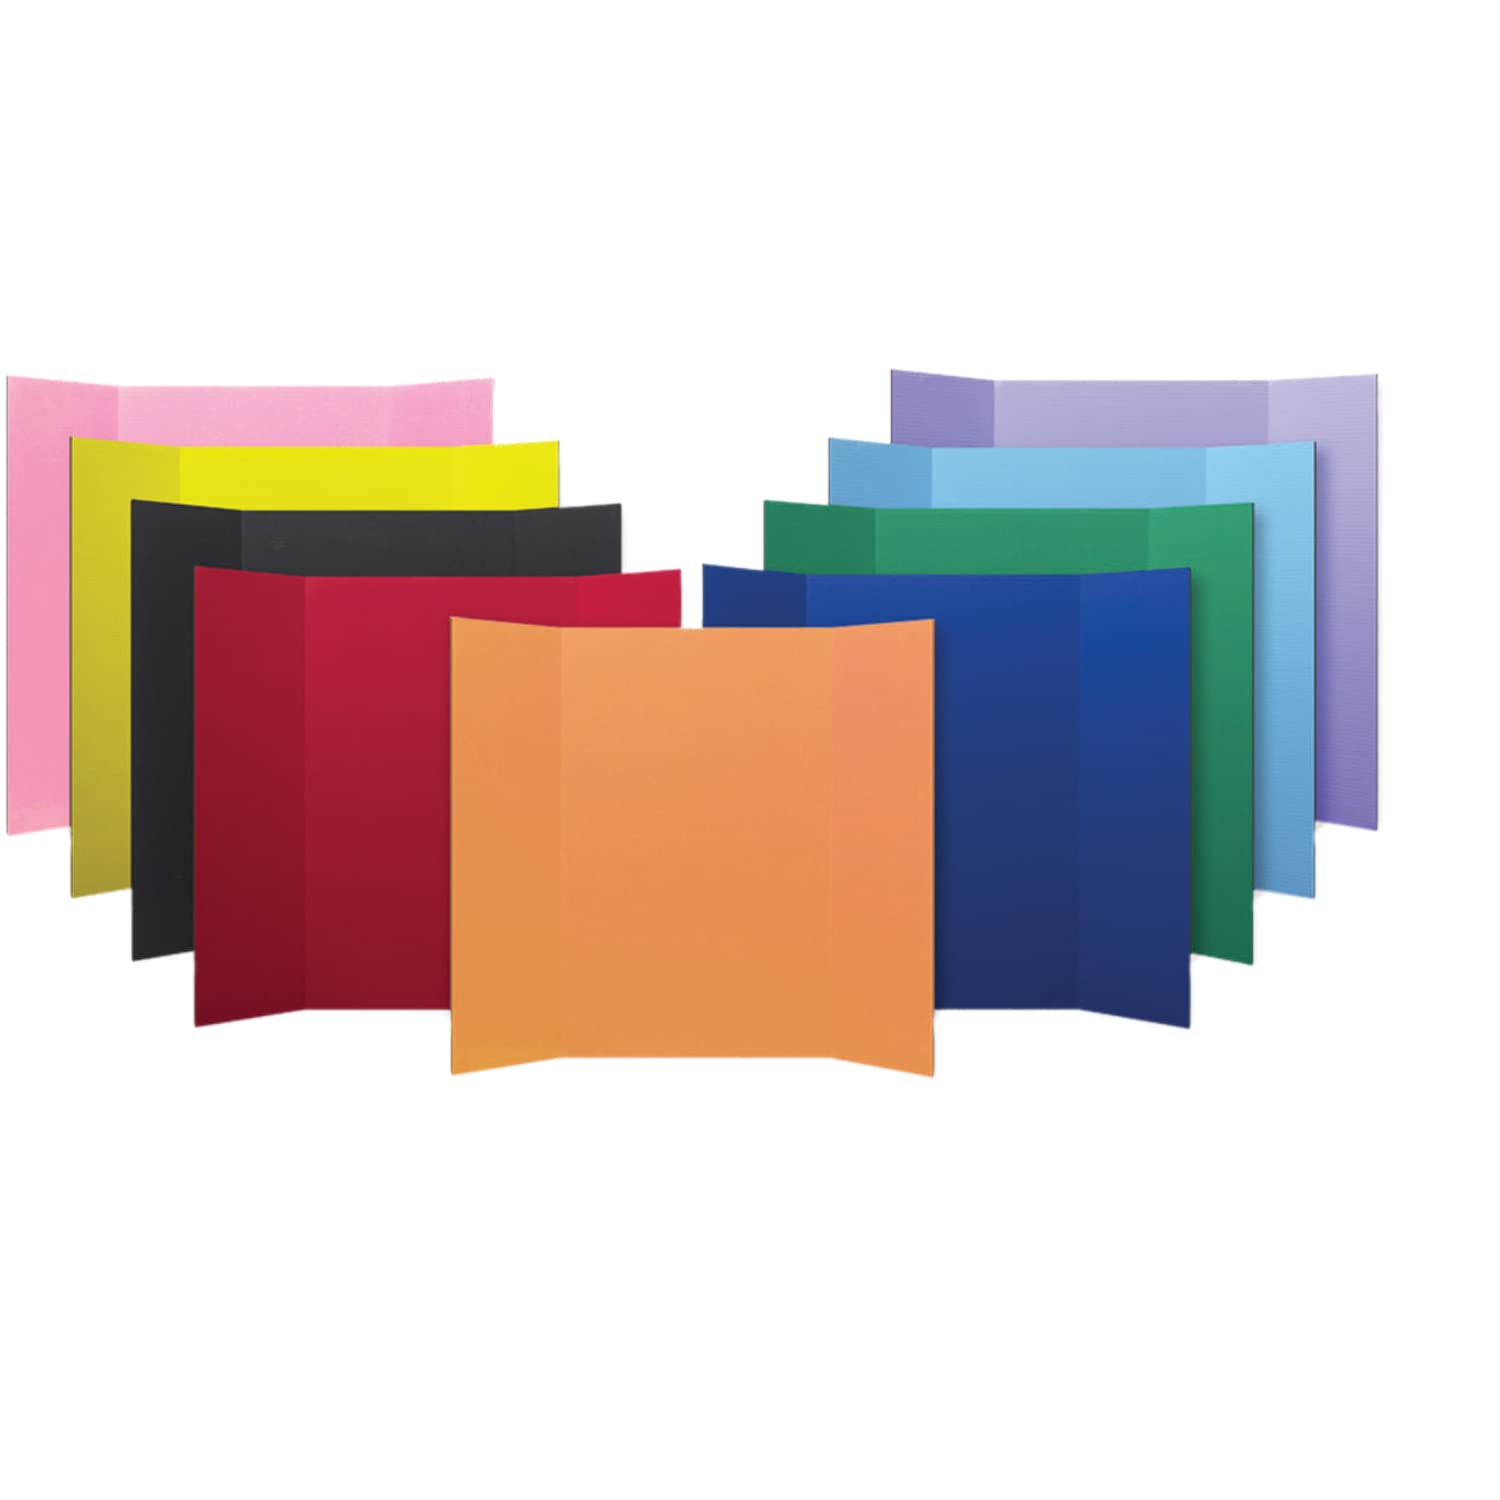 Flipside 36 x 48 1 camada de placa de projeto de sortimento de cores pacote a granel com 24